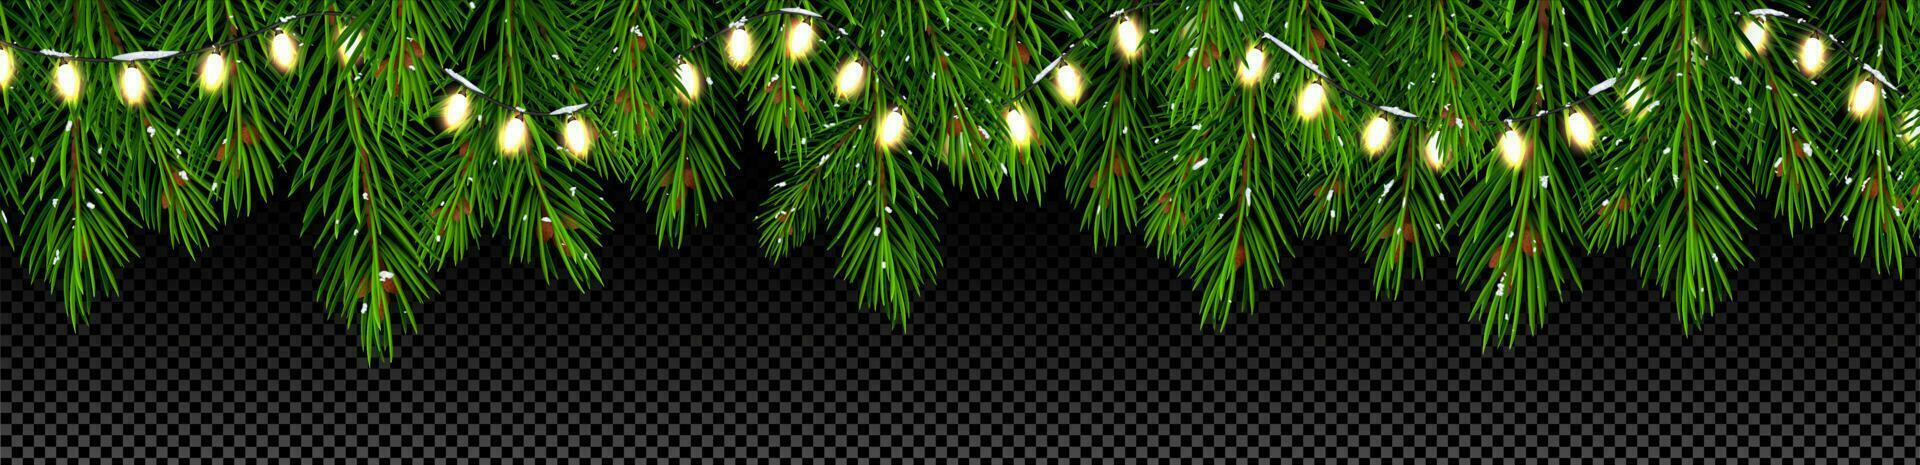 Navidad árbol ramas con luces guirnalda vector